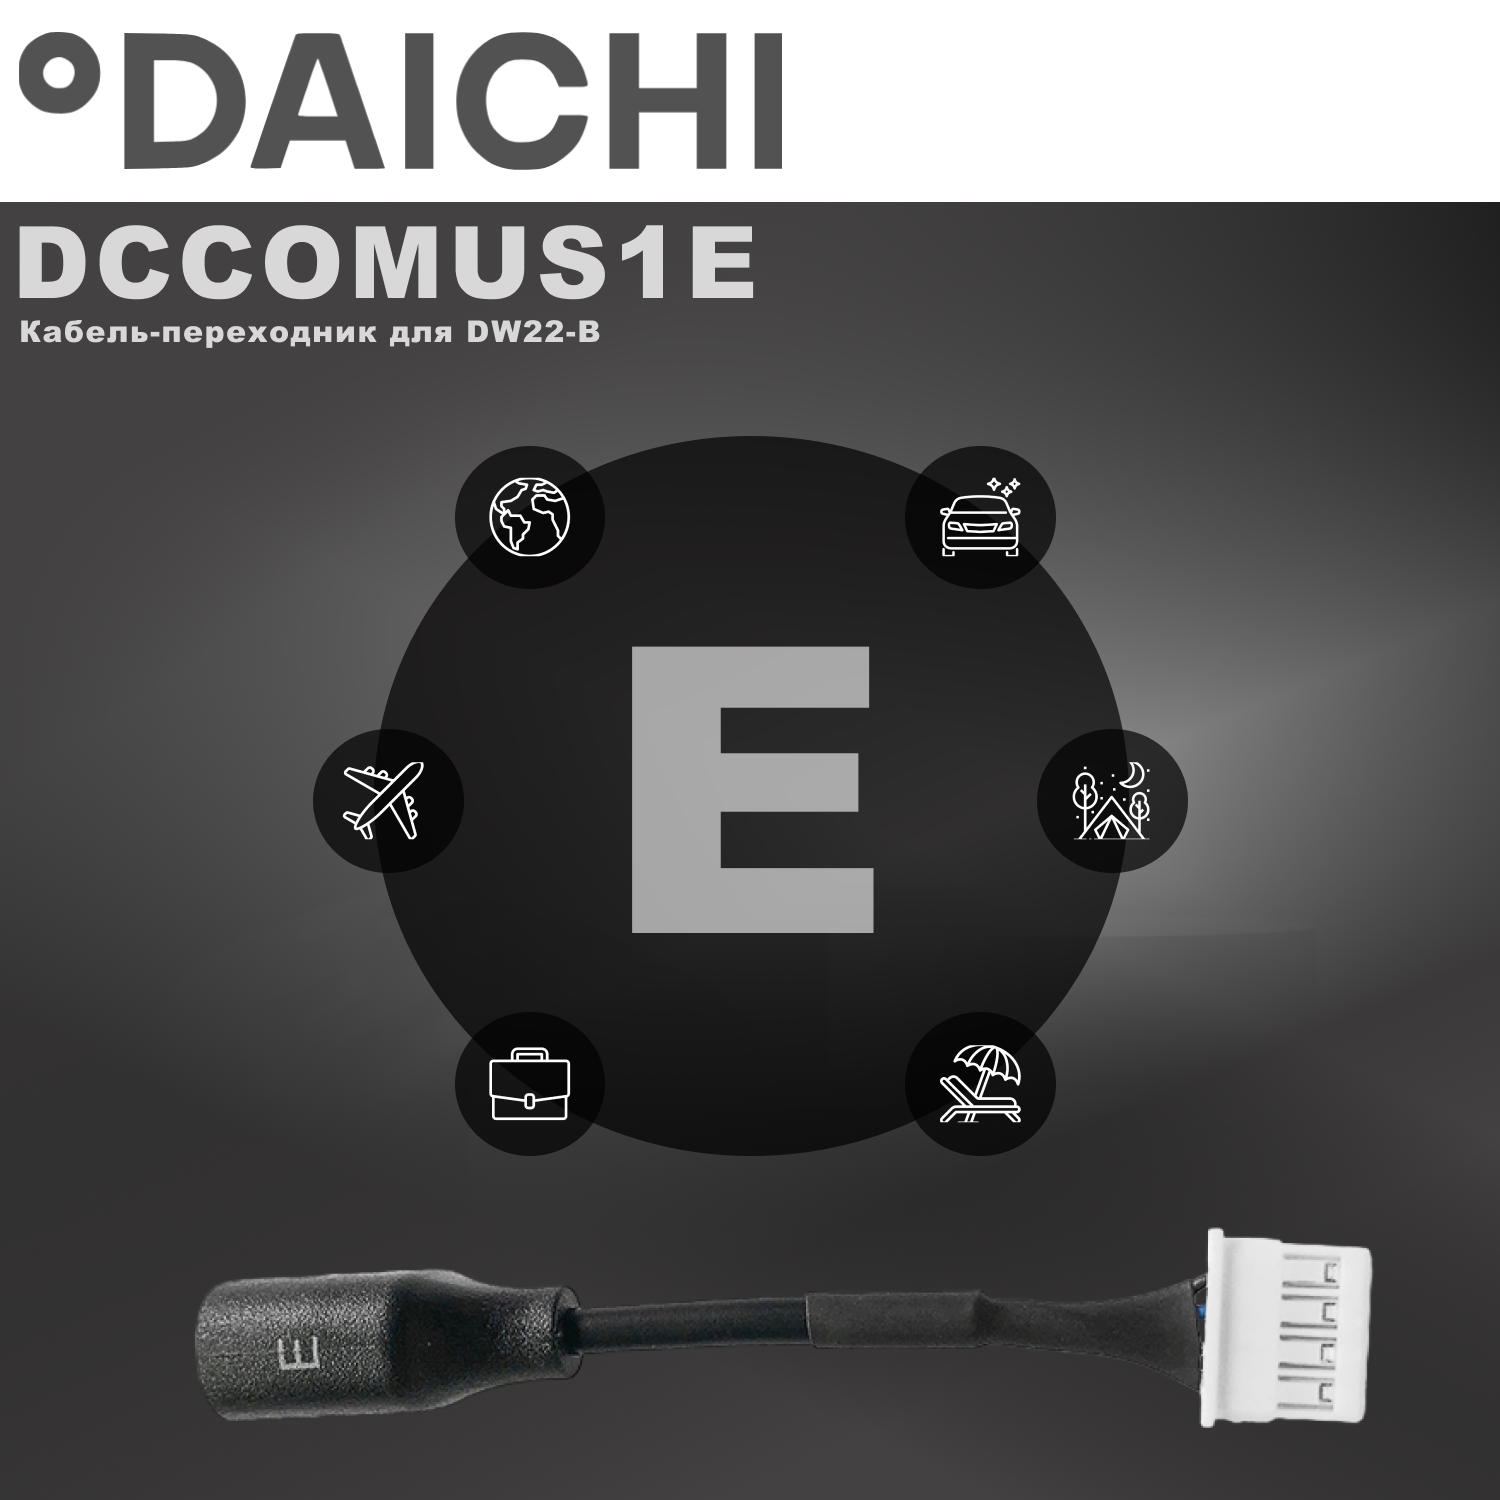 Кабель-переходник Daichi DCCOMUS1E